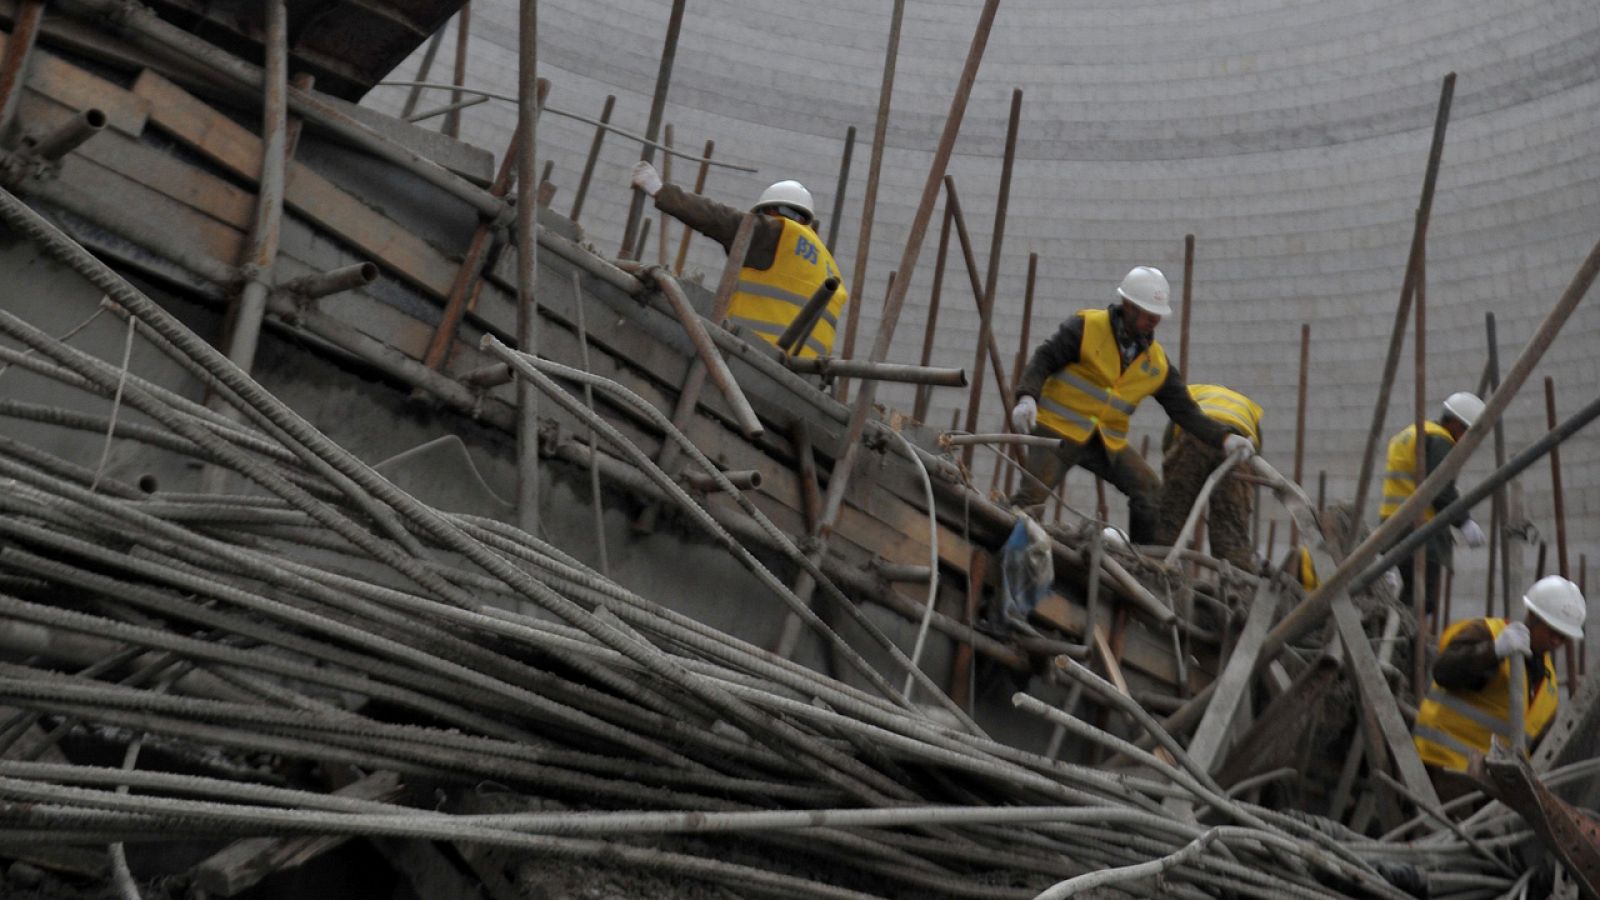 Trabajadores buscan víctimas entre los restos del andamiaje desplomado en una central eléctrica en Jianxi, China